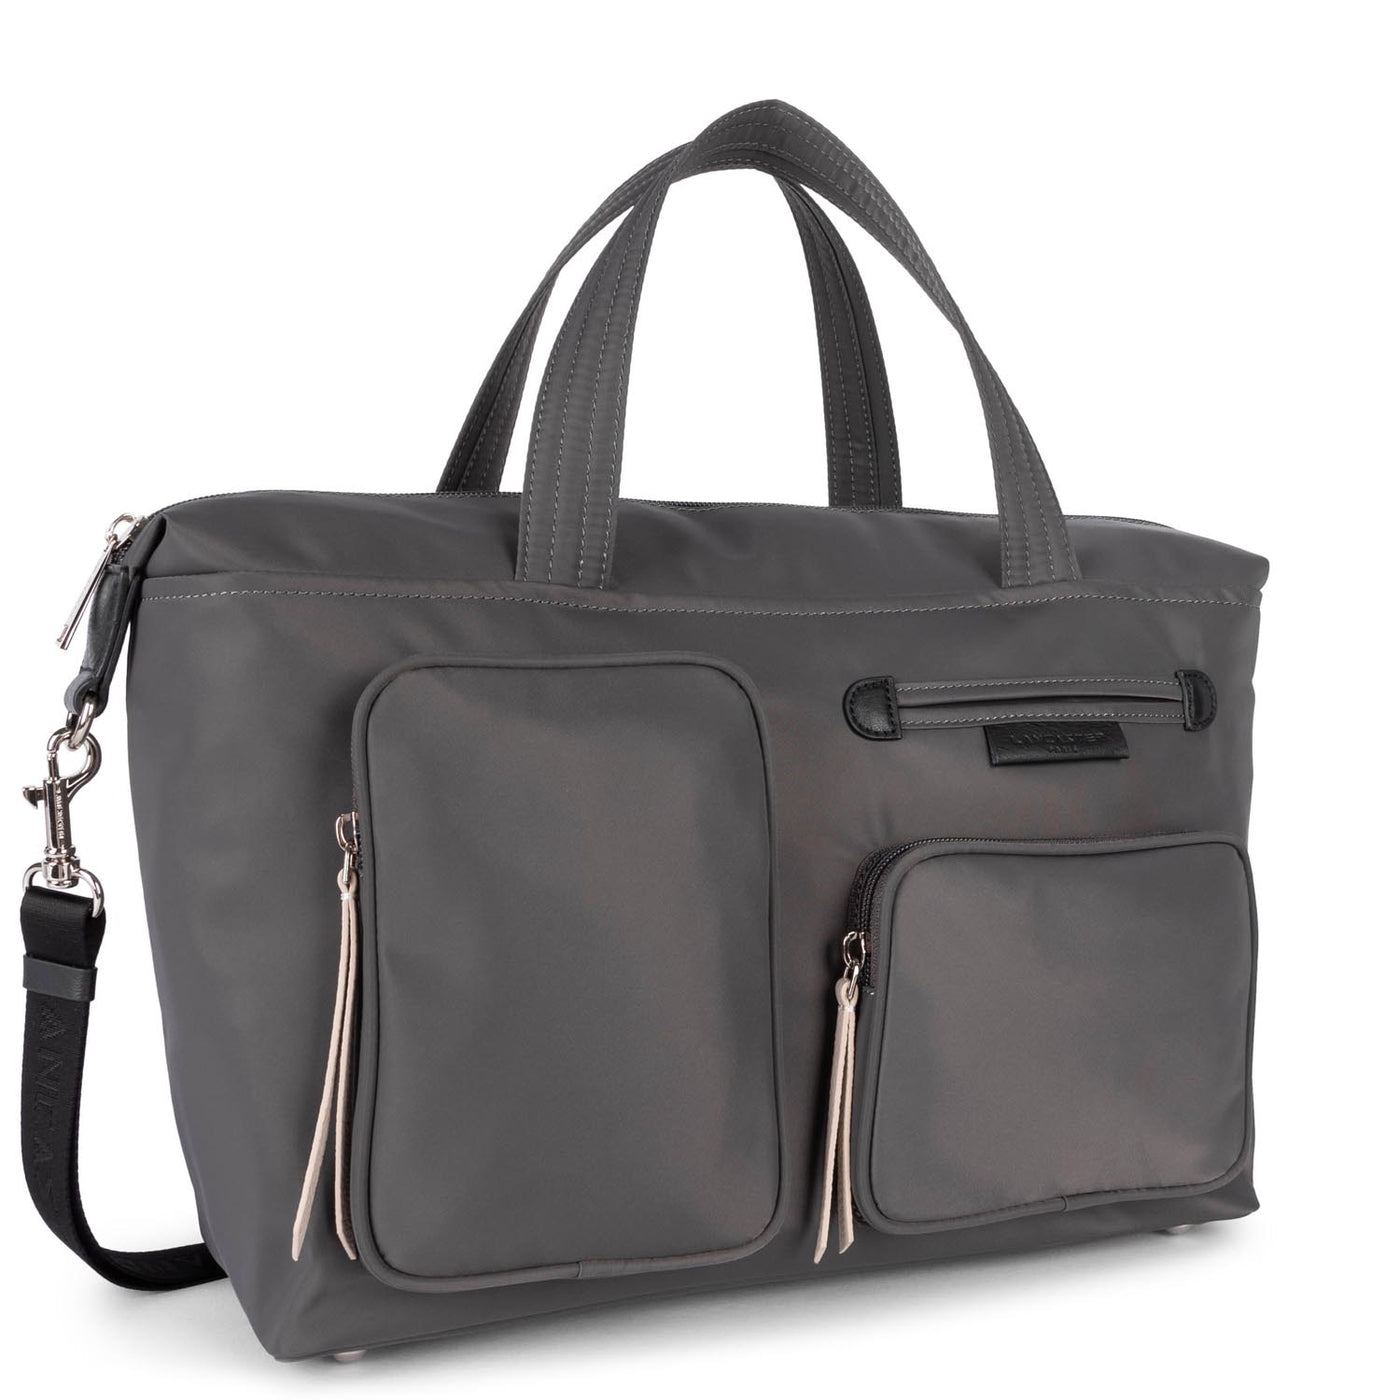 grand sac cabas main - basic sport #couleur_gris-noir